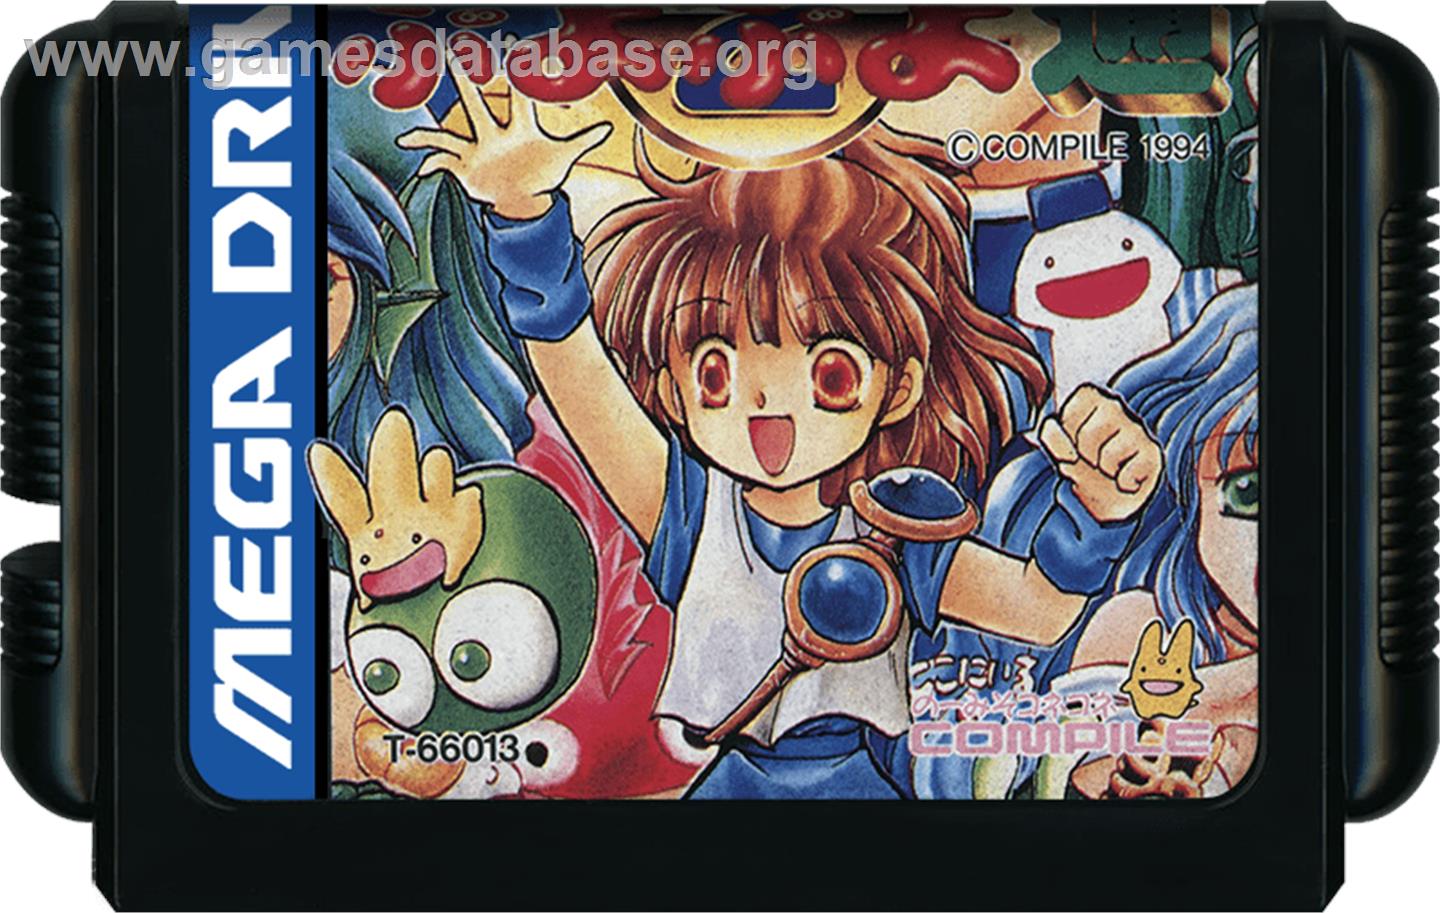 Puyo Puyo 2 - Sega Genesis - Artwork - Cartridge